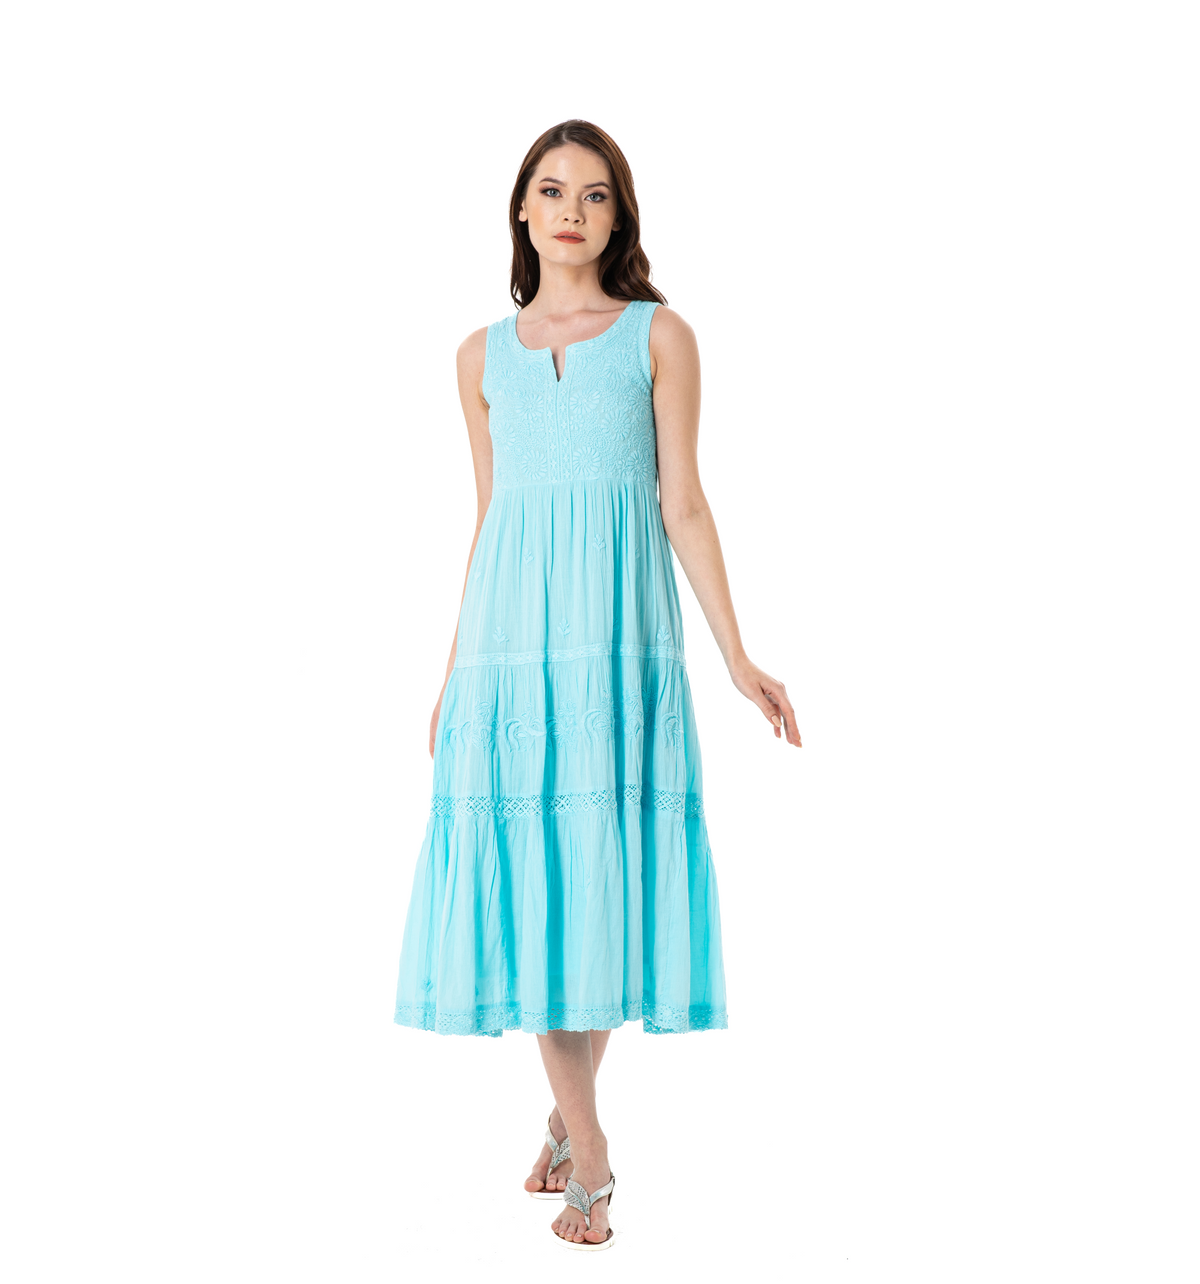 Giselle Dress-Light Turquoise